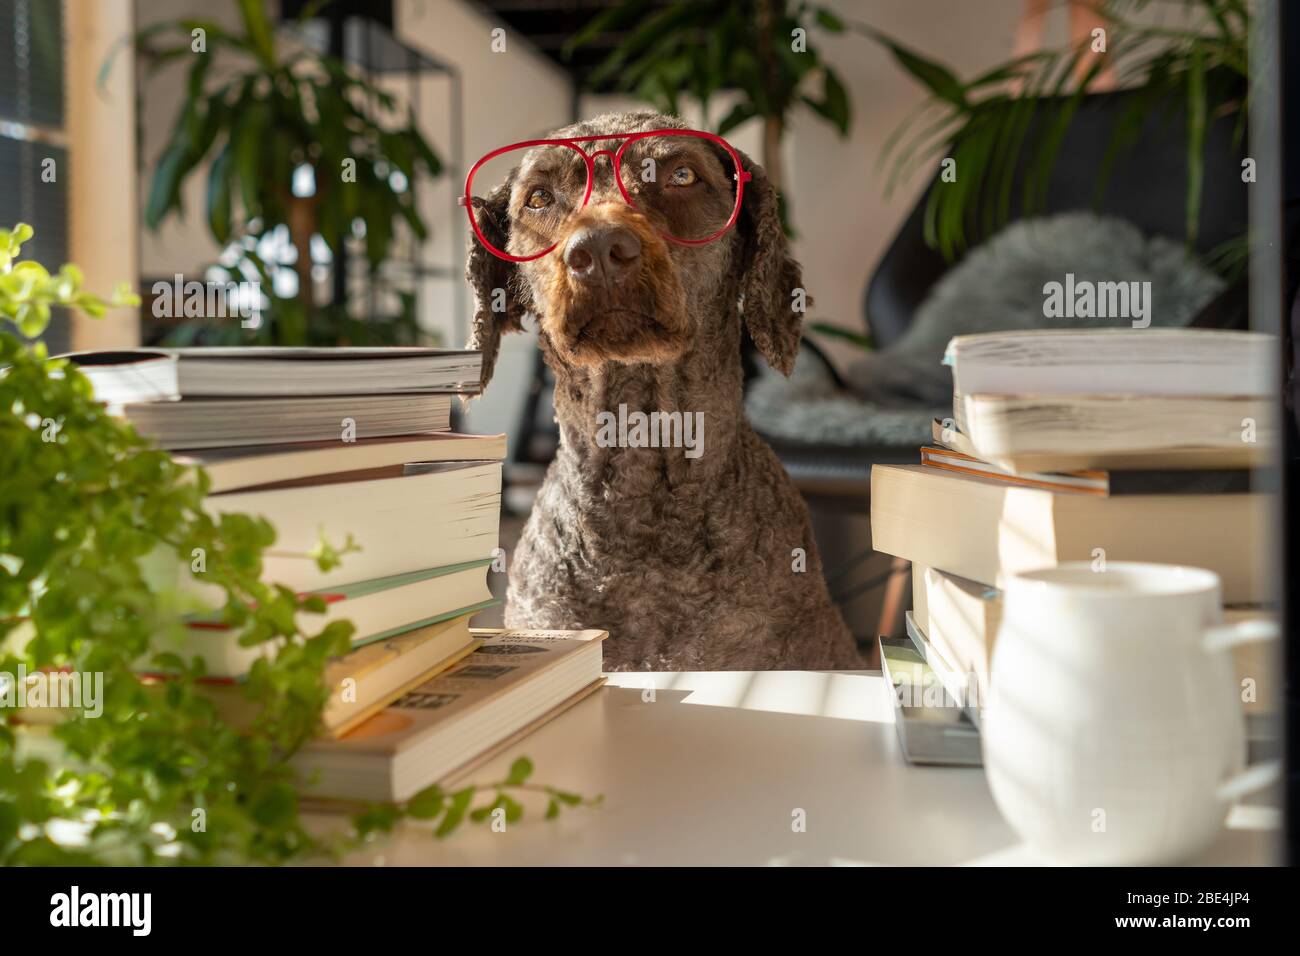 Un cane che indossa occhiali rossi tra un mucchio di libri all'interno di un appartamento con molte piante durante il tramonto Foto Stock